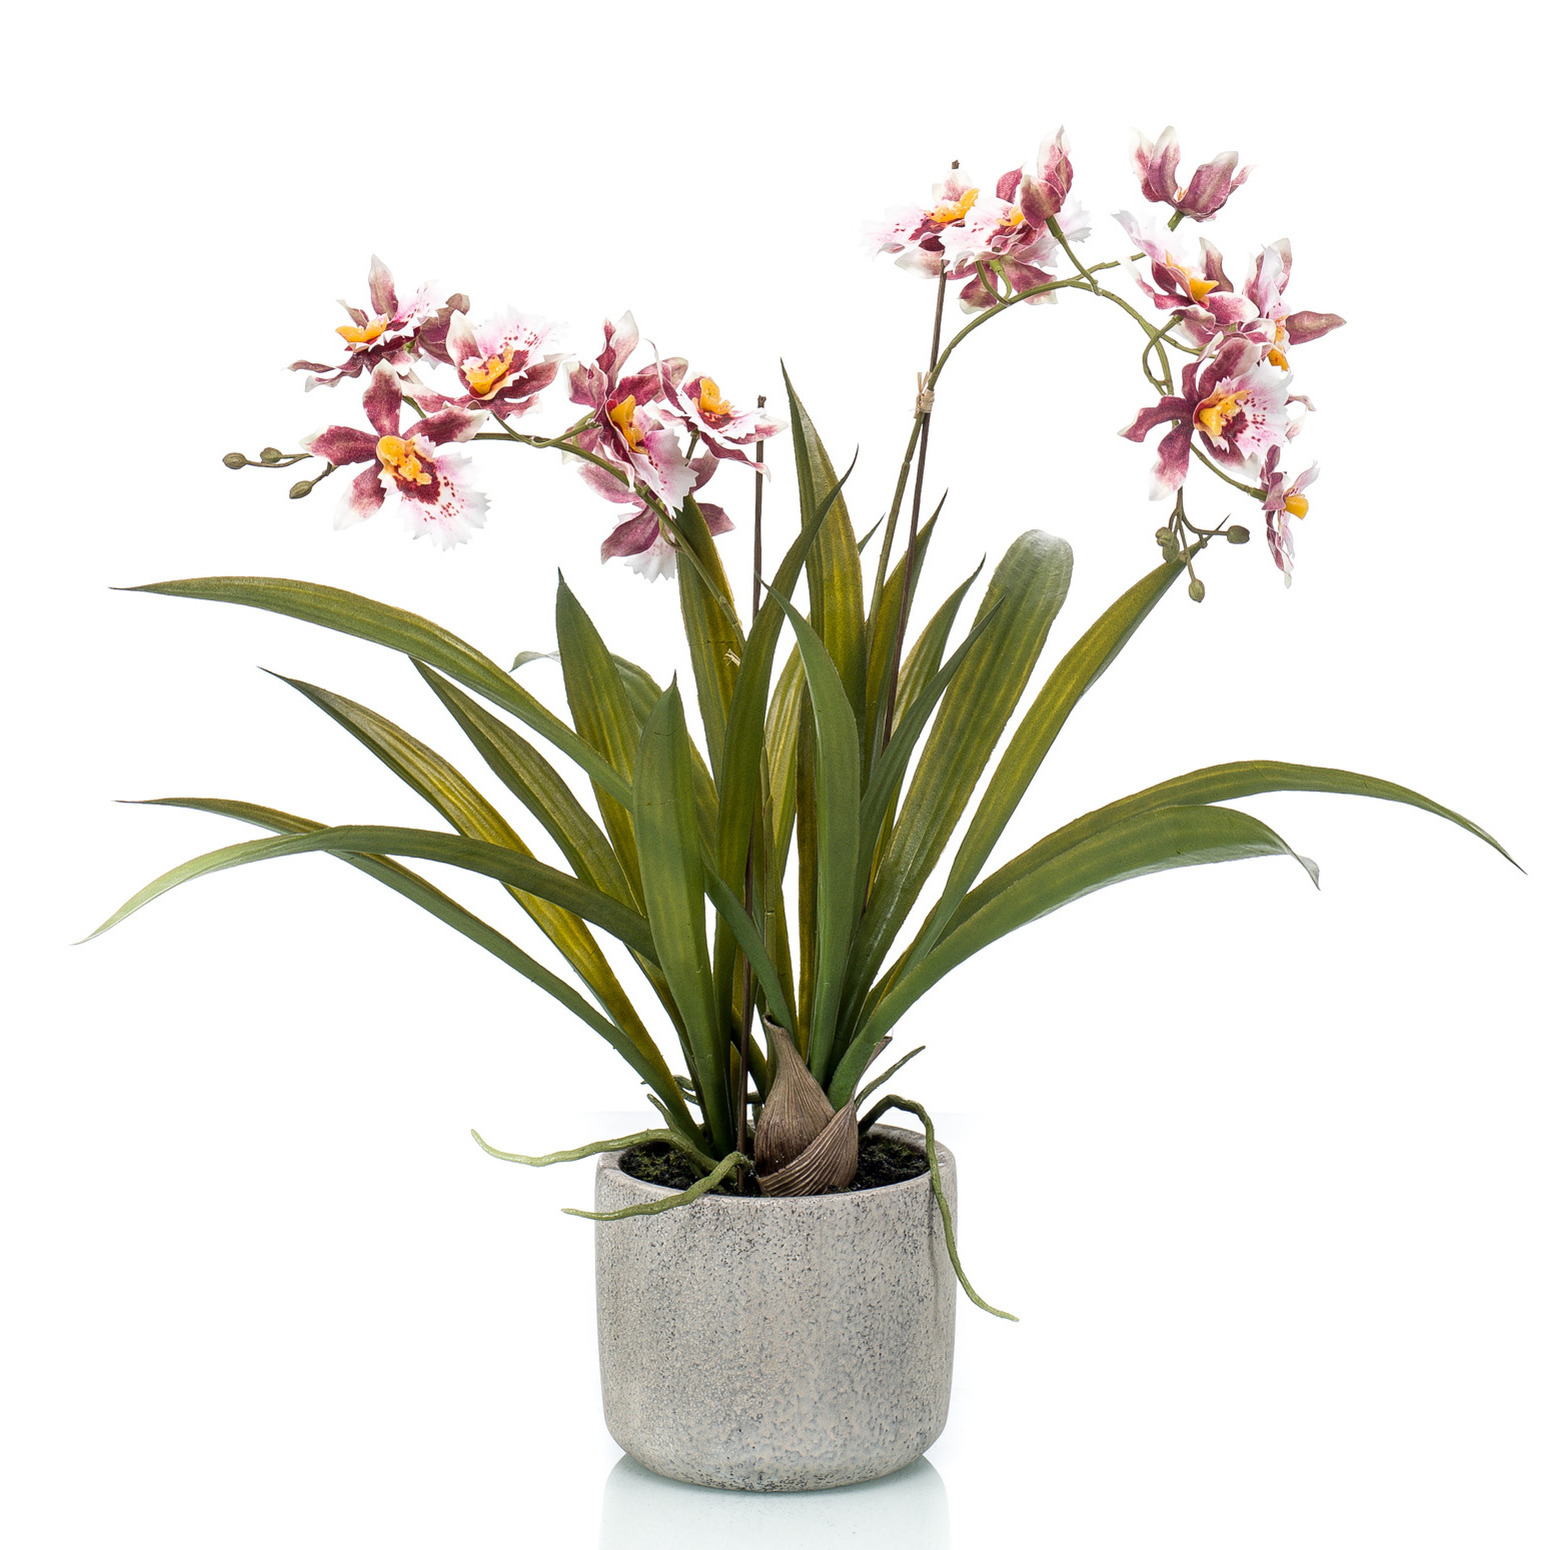 Bordeaux rode orchidee Orchidaceae kunstplant in keramische pot 45 cm